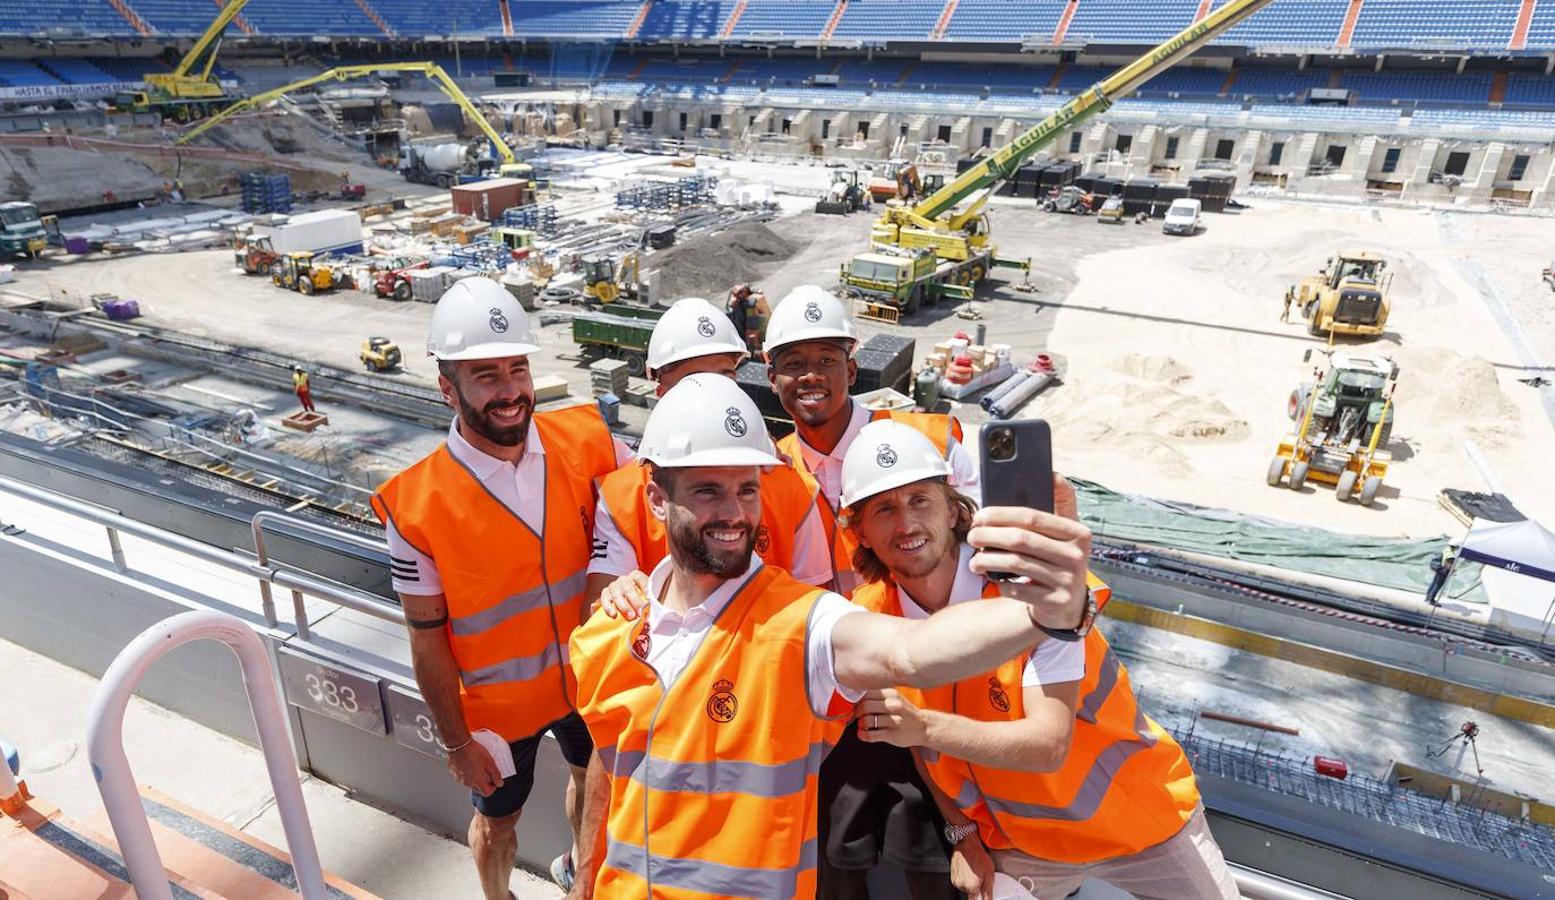 Selfie y despedida. Además de las fotos promocionales, los jugadores dijeron un 'hasta luego' a su estadio mediante una foto grupal y más informal que fue directa a sus redes sociales.